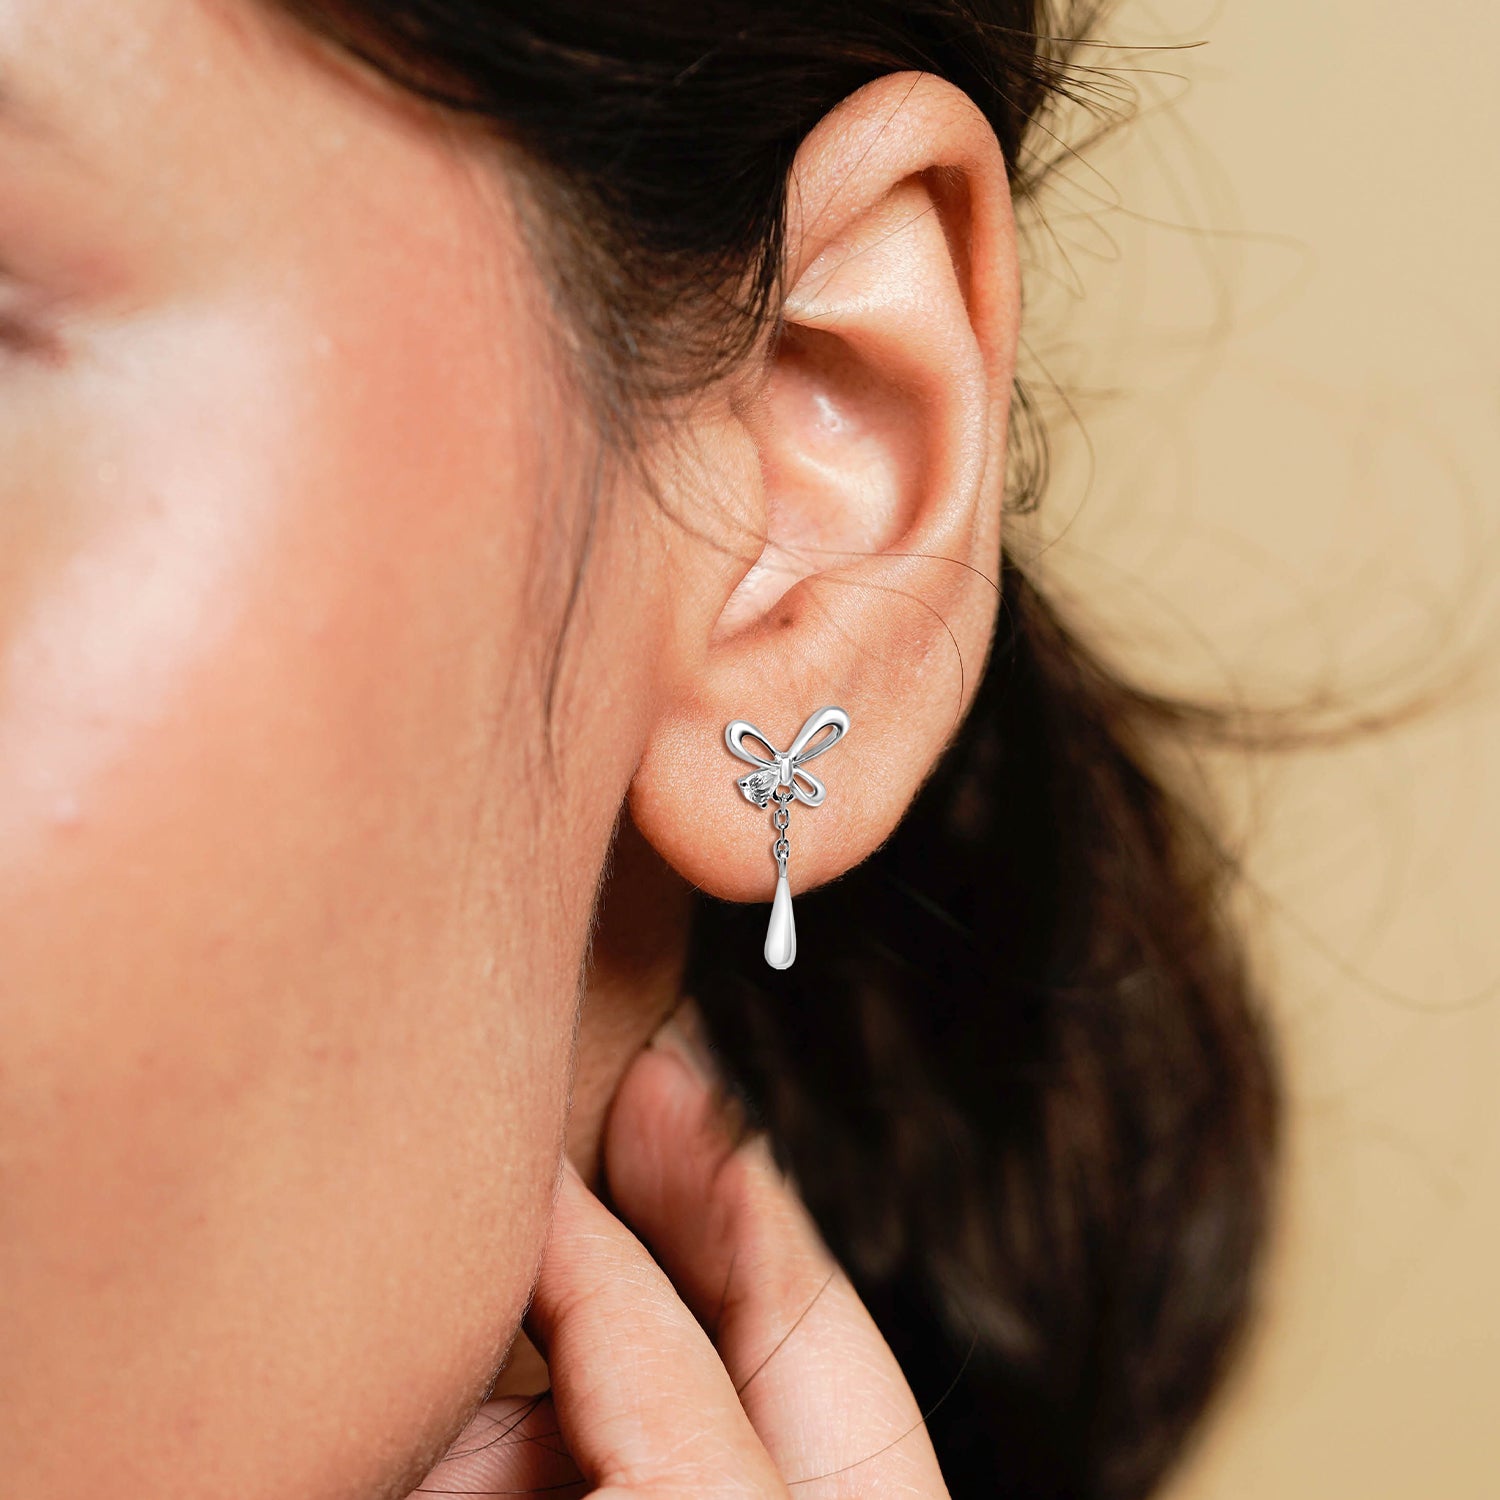 Silver Butterfly with Dangler Earrings